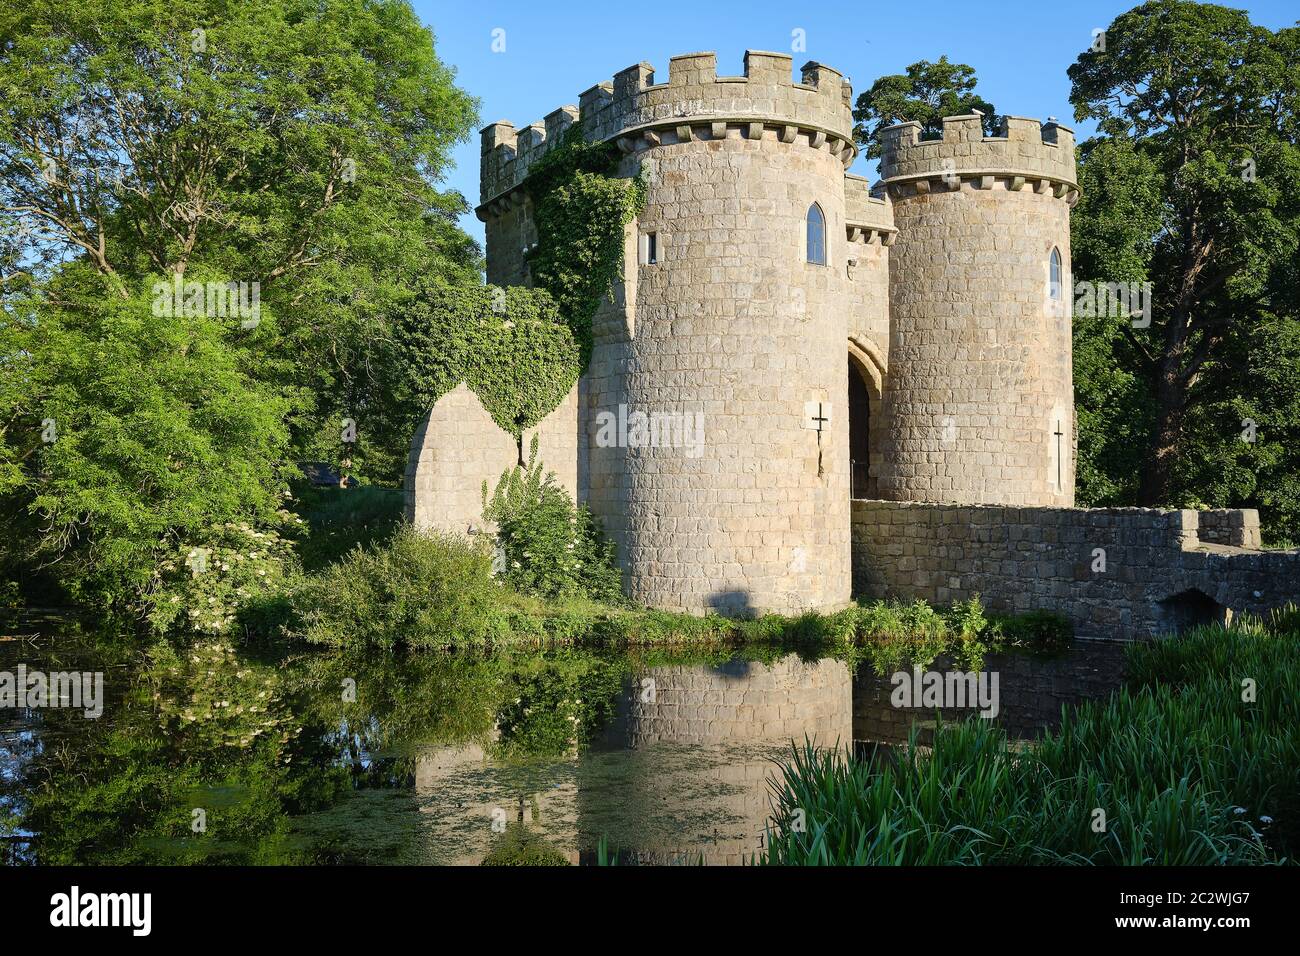 Whittington Castle, Shropshire, UK Stock Photo